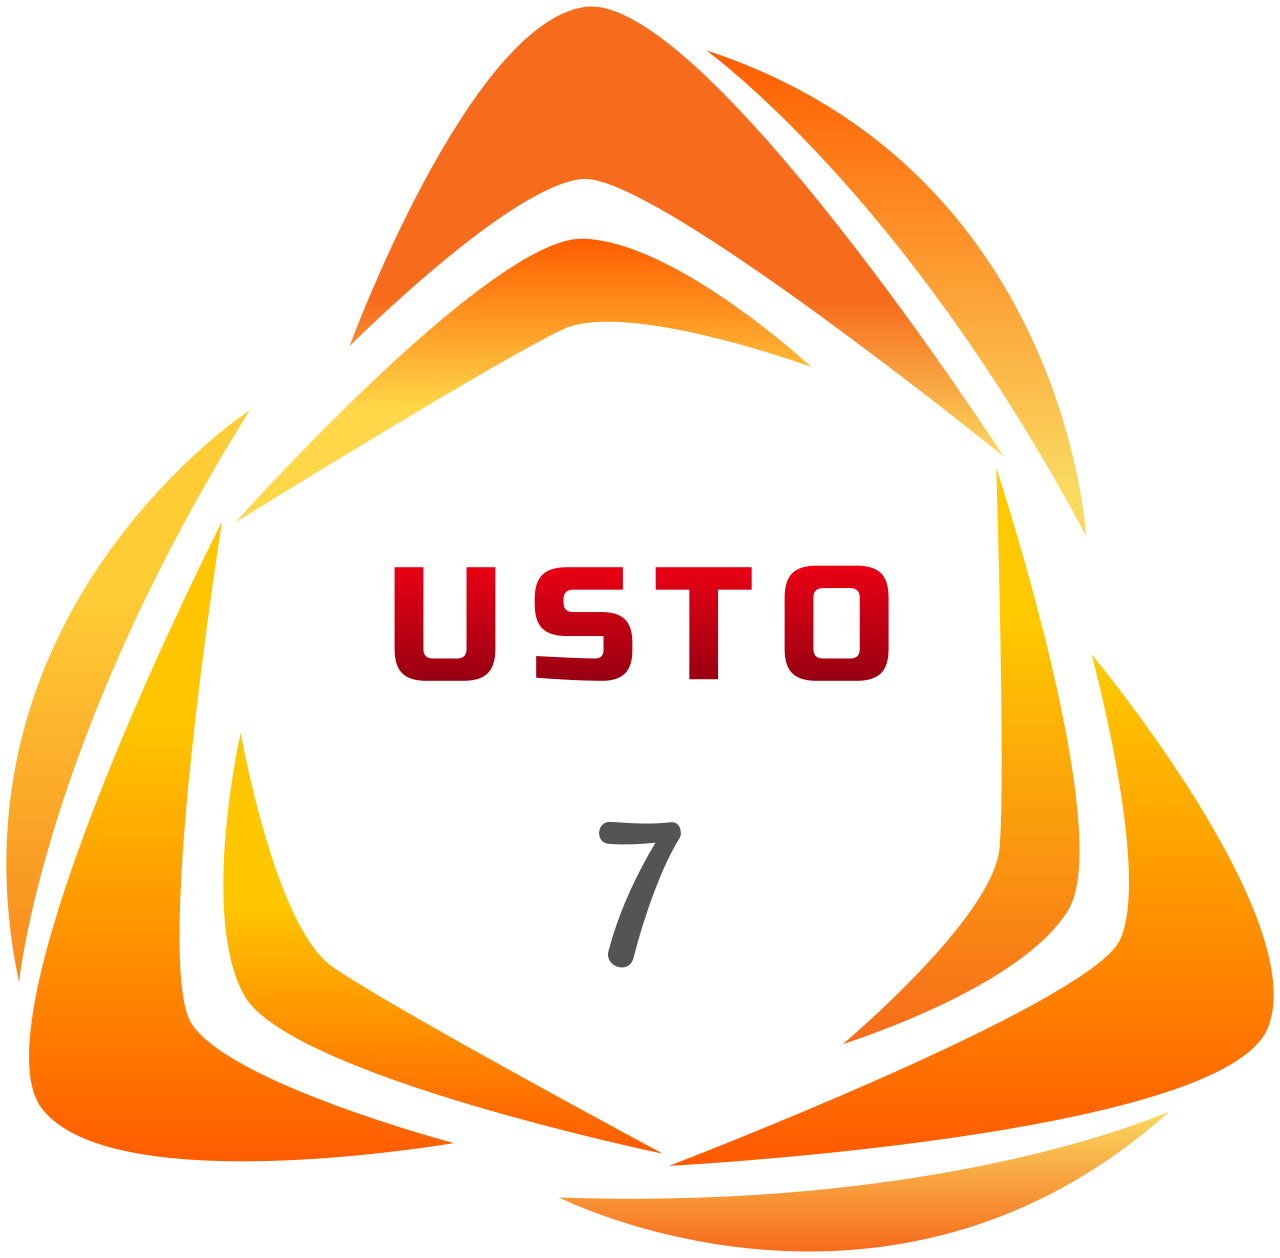 usto's logo